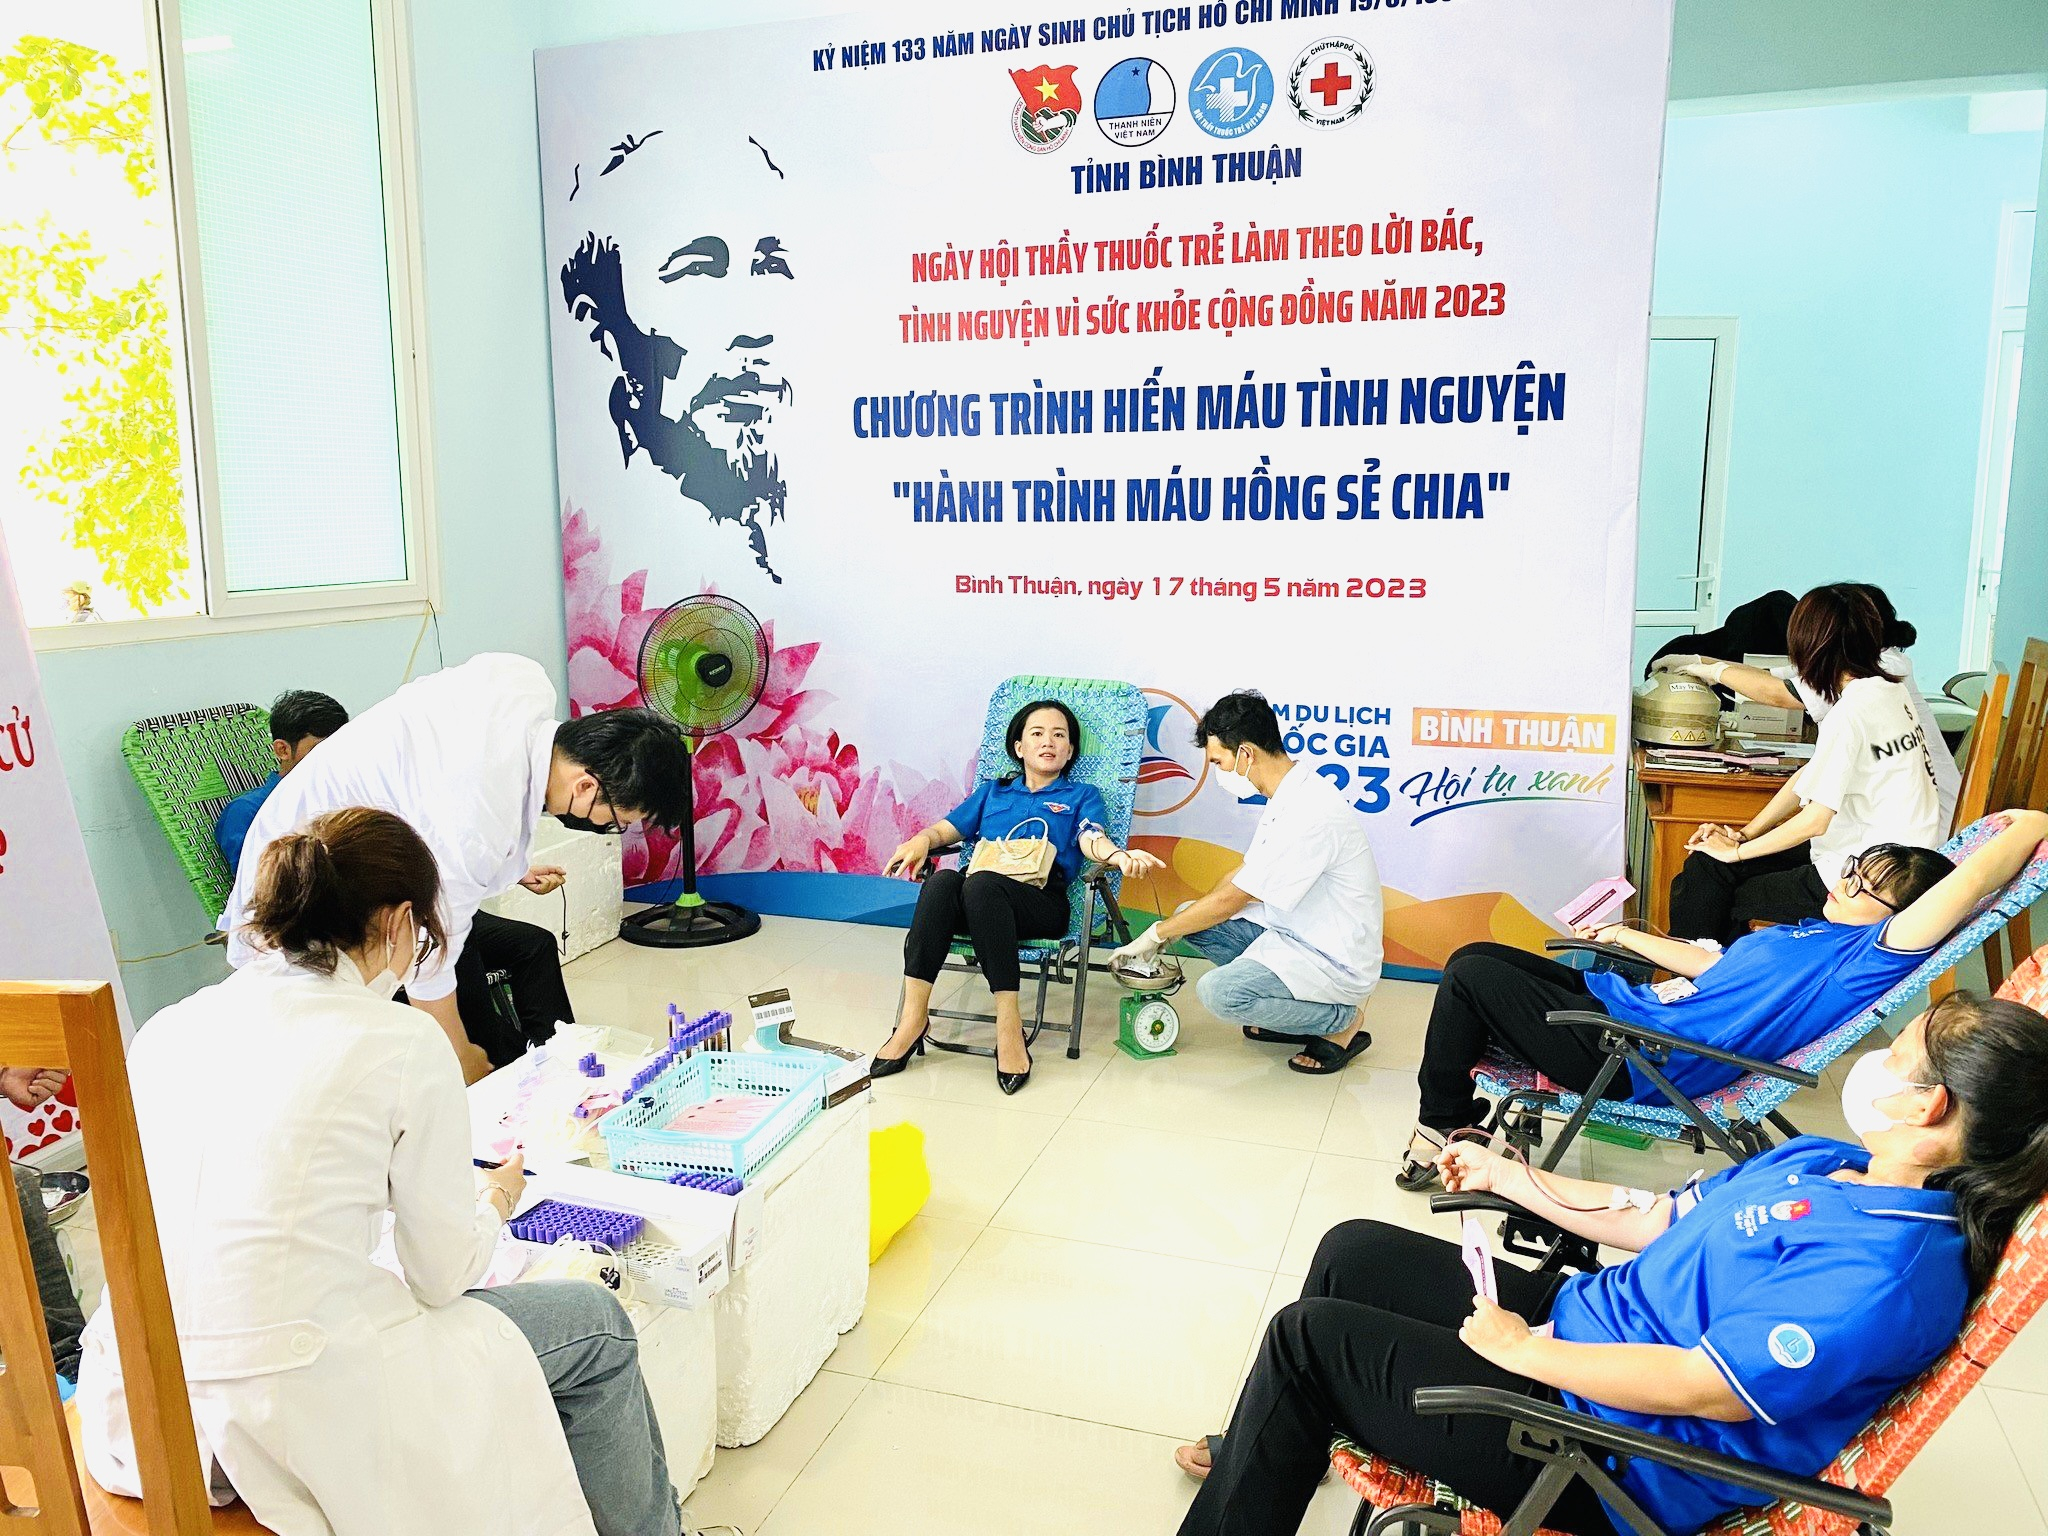 Tỉnh đoàn - Hội LHTN Việt Nam tỉnh phối hợp với Hội Chữ thập đỏ tổ chức hoạt động hiến máu tình nguyện.